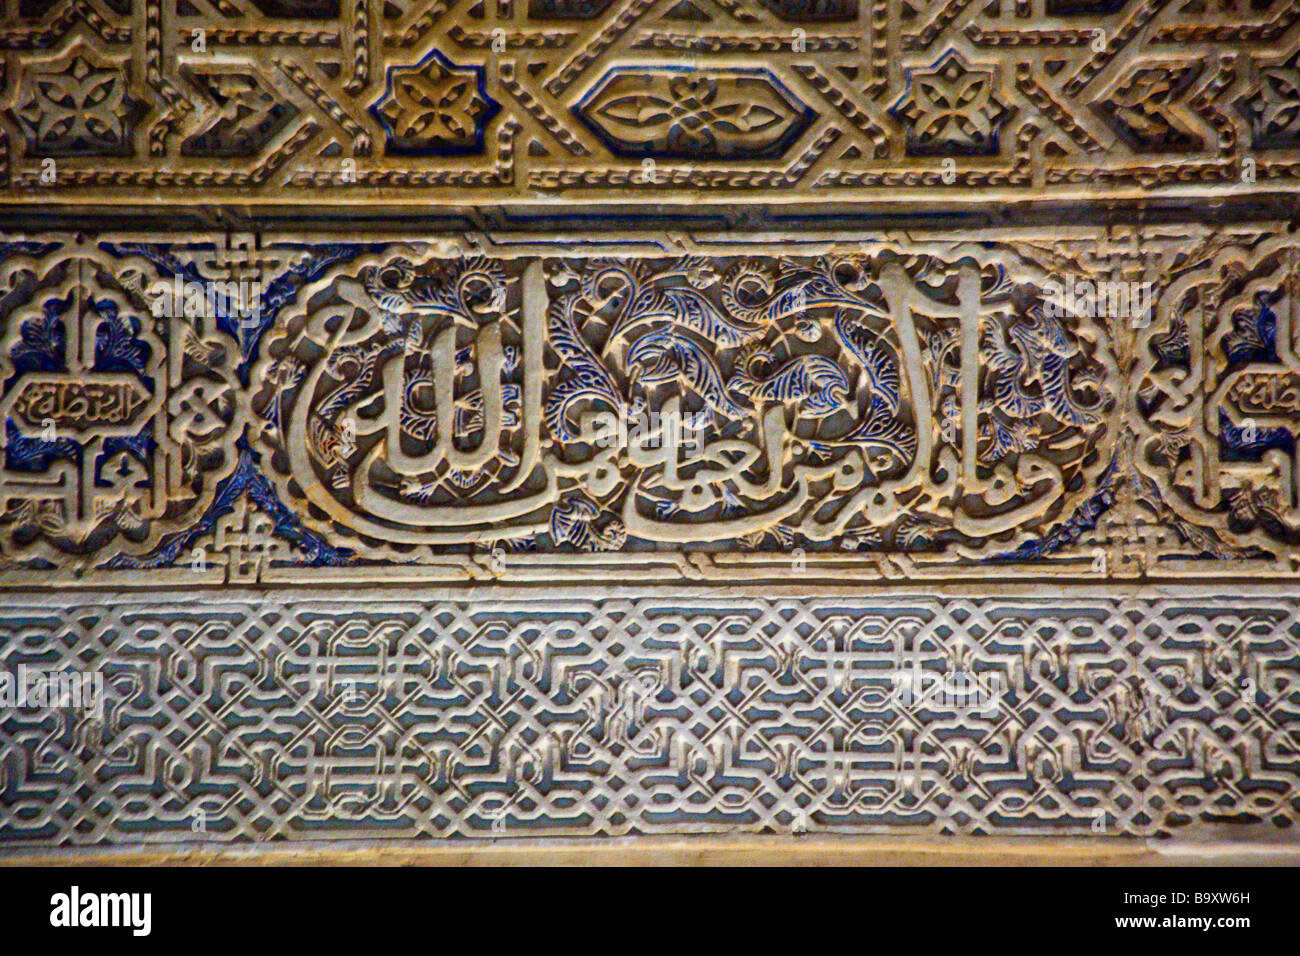 Arabische Inschrift in Mexuar in den Nasriden Palast der Alhambra in Granada Spanien Stockfoto